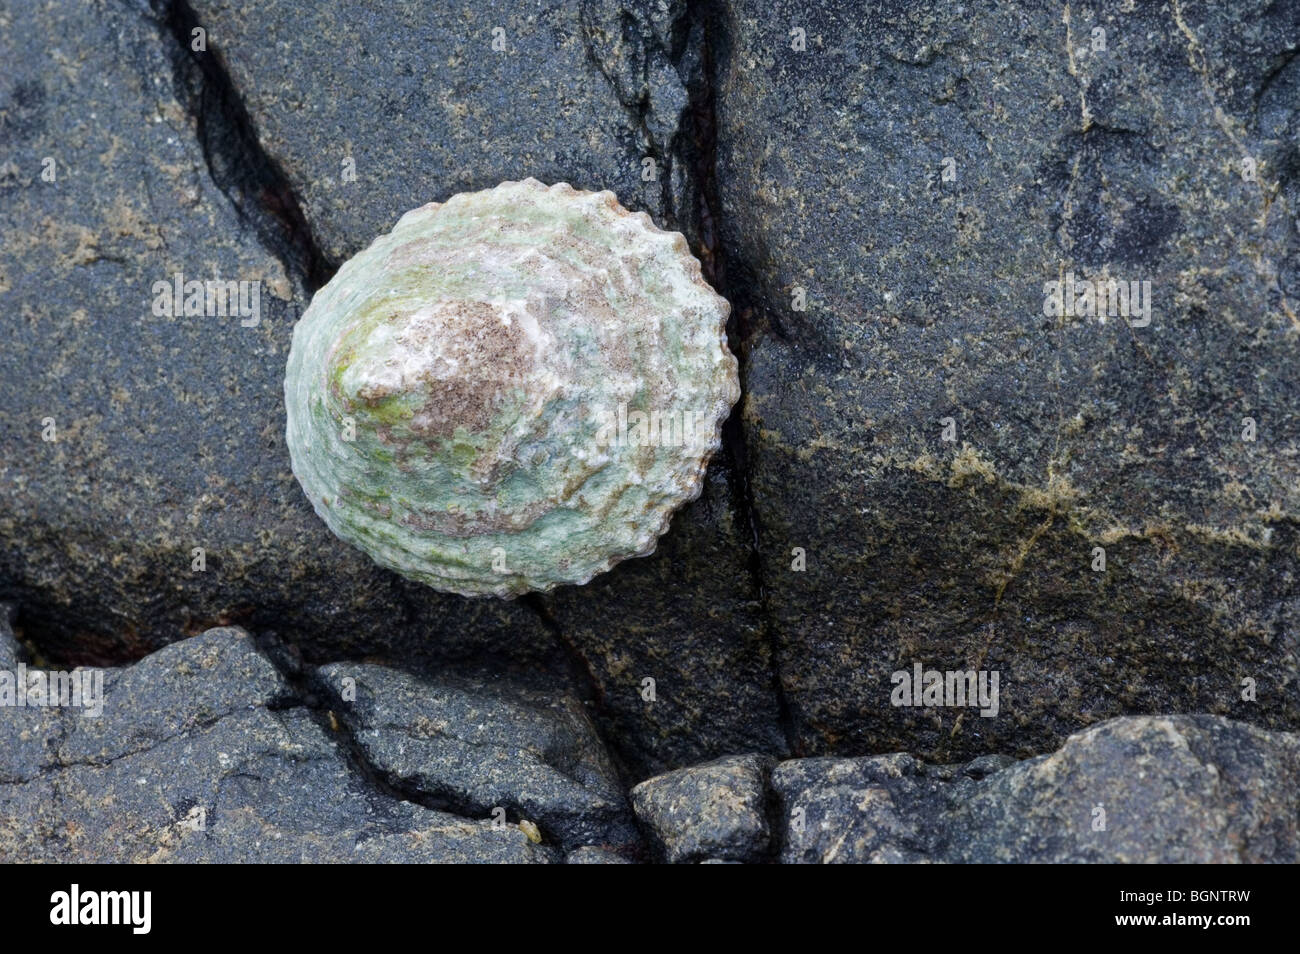 Limpet común europeo (Patella vulgata) sobre roca, Bretaña, Francia Foto de stock